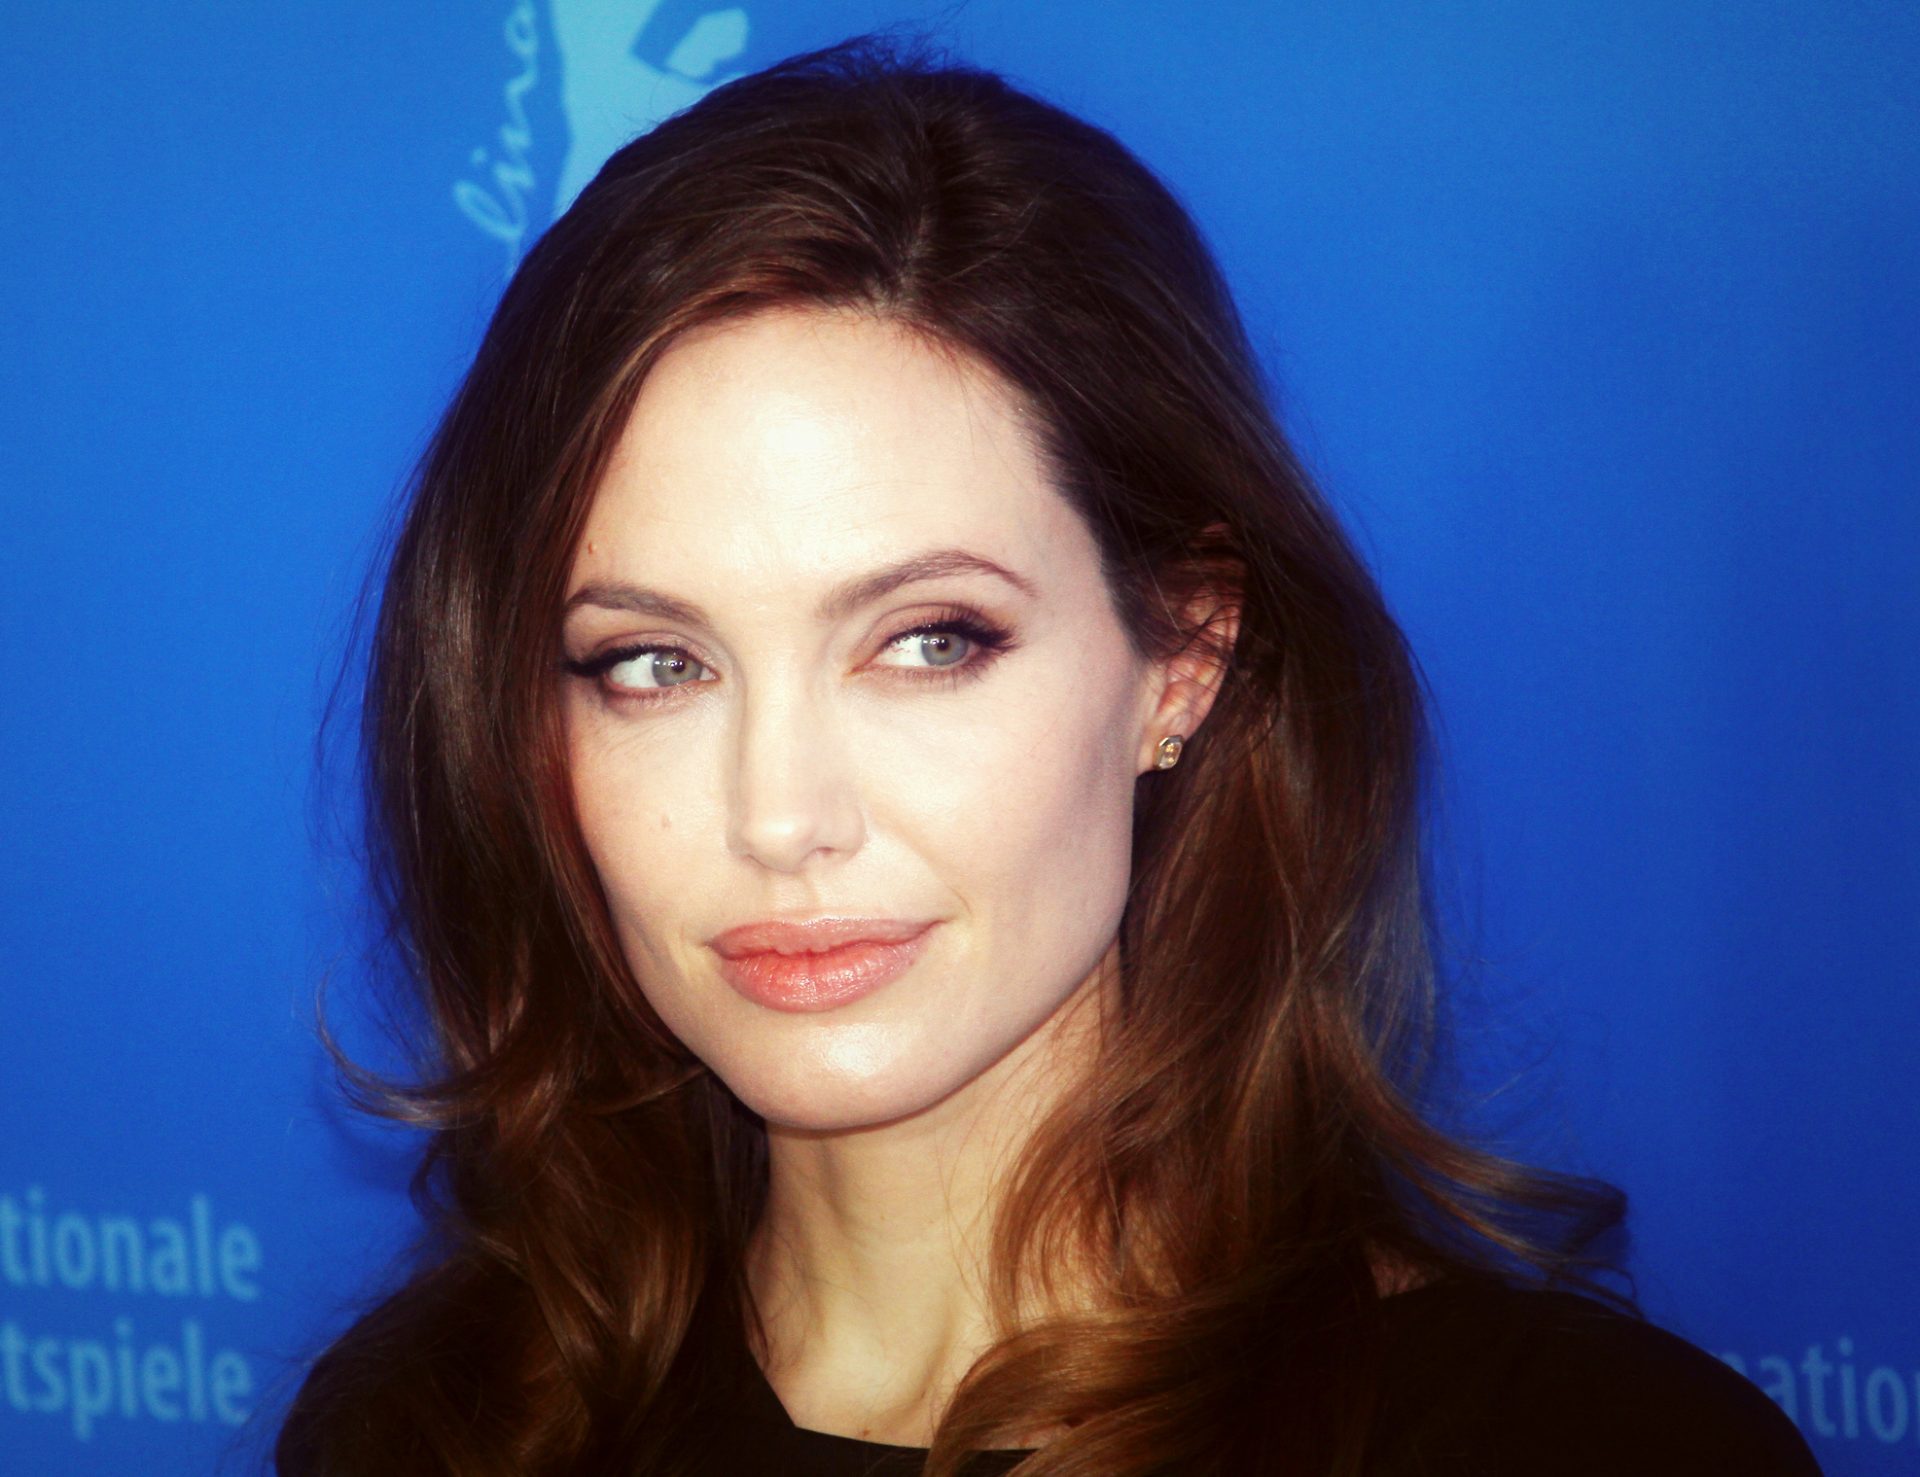 E se Angelina Jolie fosse a próxima presidente dos EUA? | VÍDEO